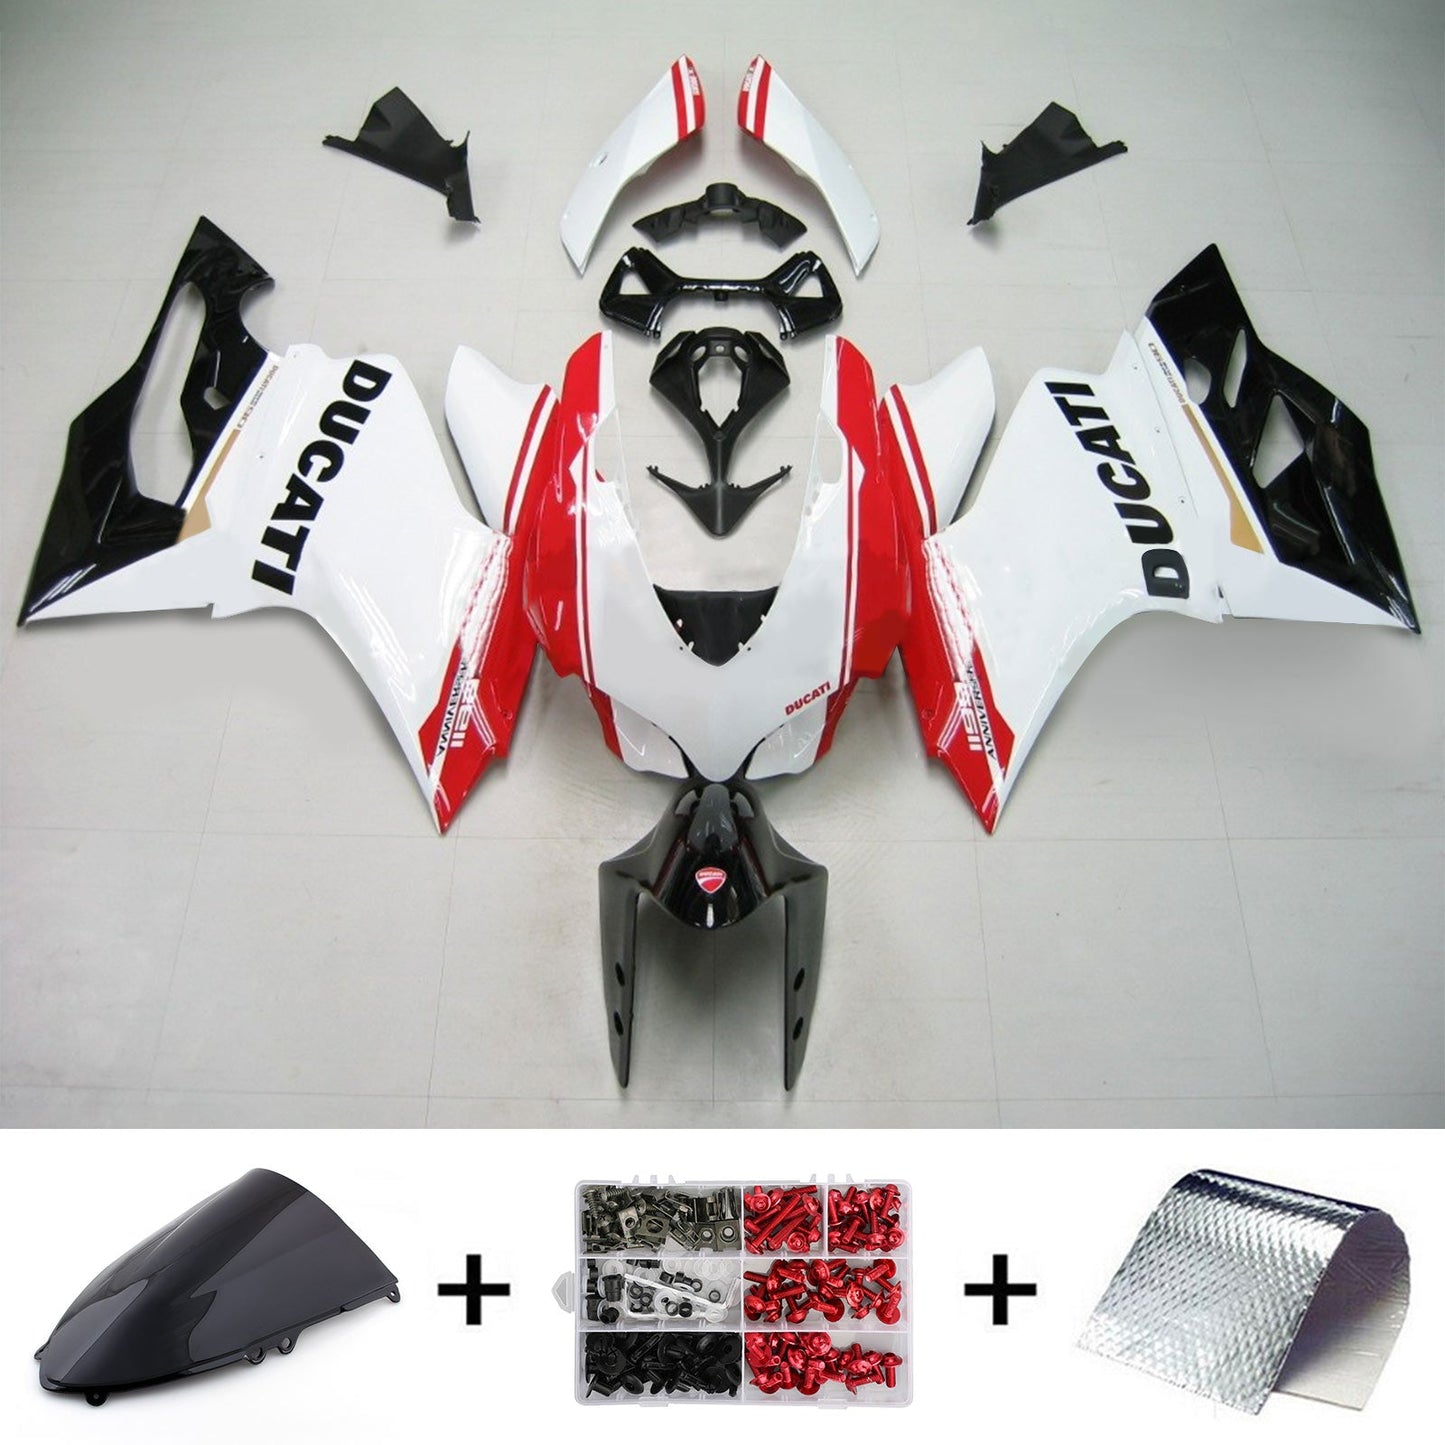 Amotopart Ducati 2012-2014 1199/899 Schwarz wei? rote Verkleidung Kit